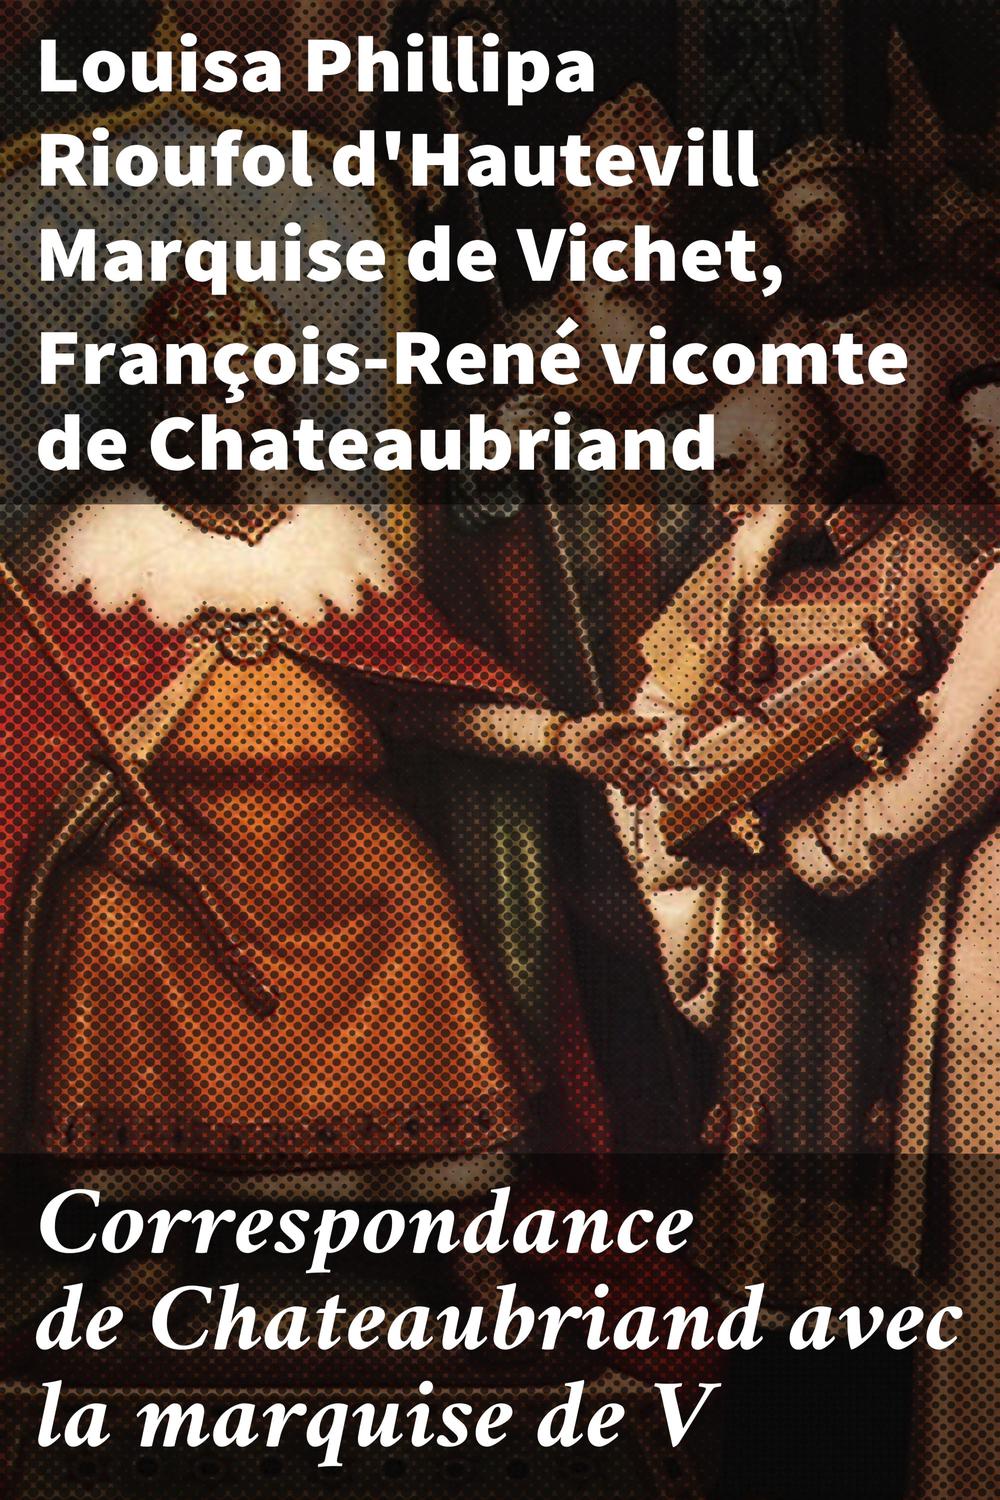 Correspondance de Chateaubriand avec la marquise de V - Louisa Phillipa Rioufol d'Hautevill, Marquise de Vichet, François-René, vicomte de Chateaubriand